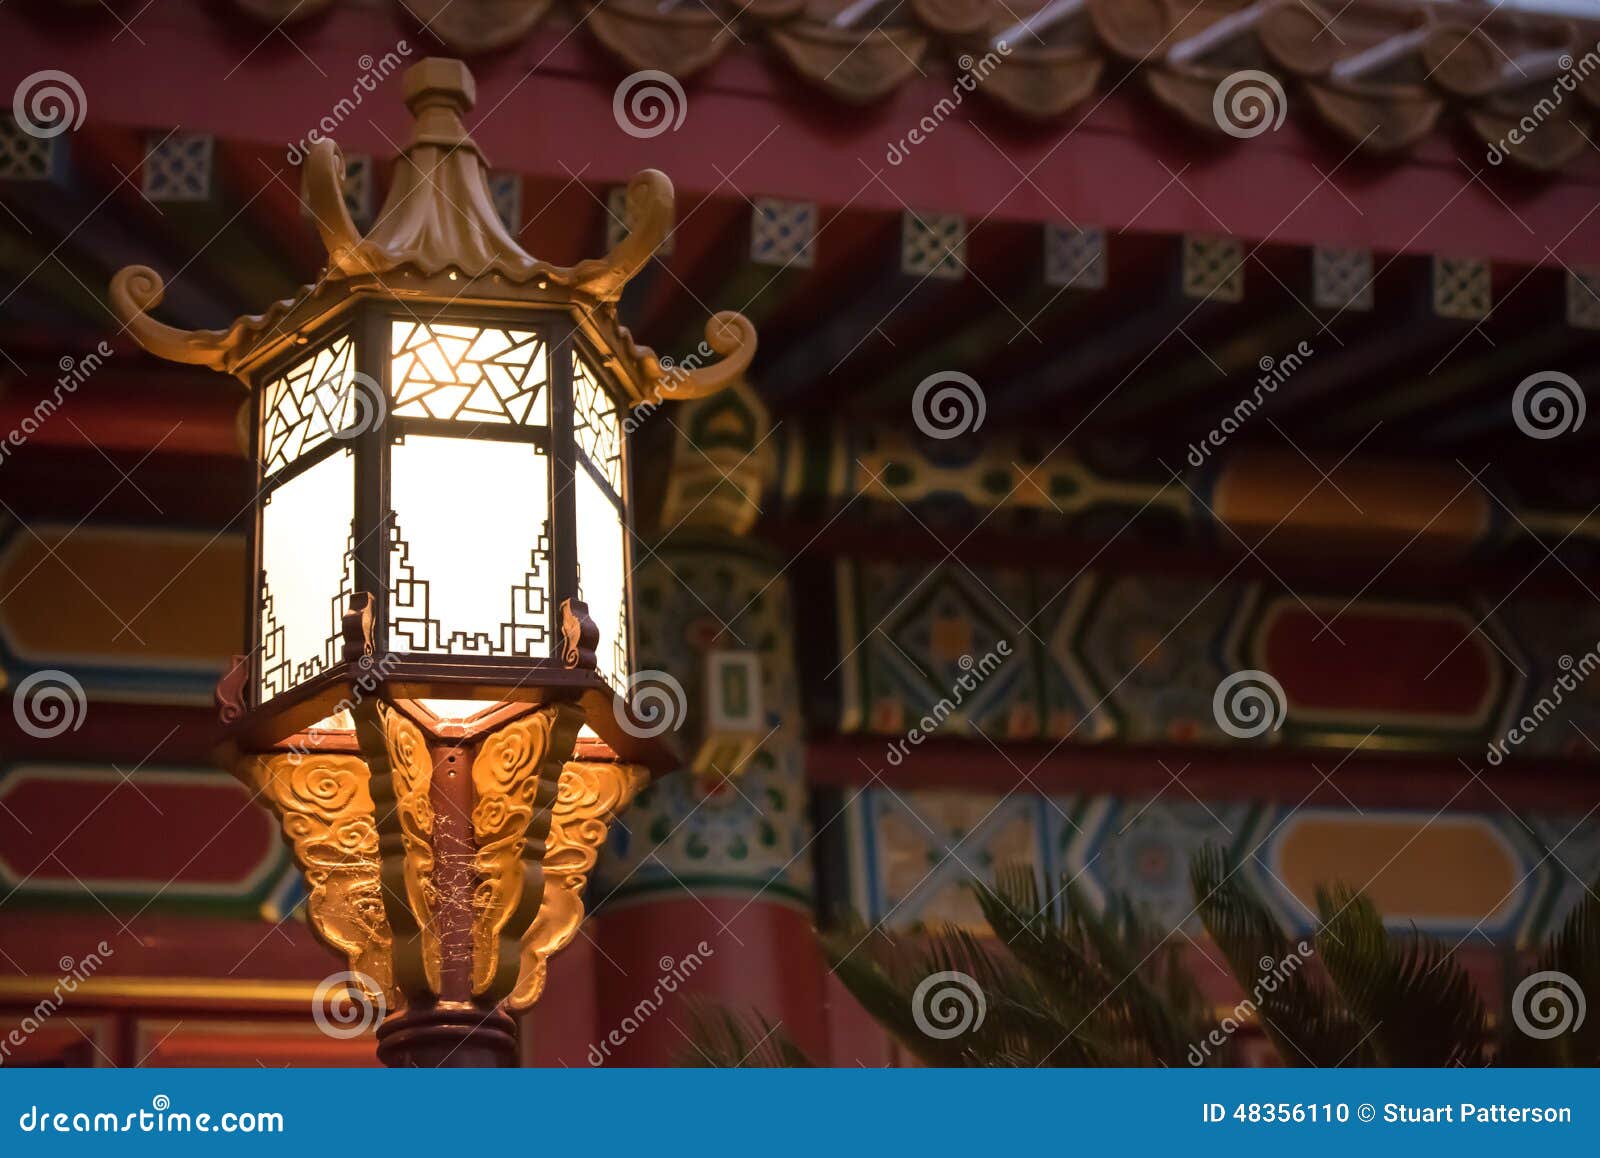 Lampada giapponese dorata fotografia stock. Immagine di disegno - 48356110